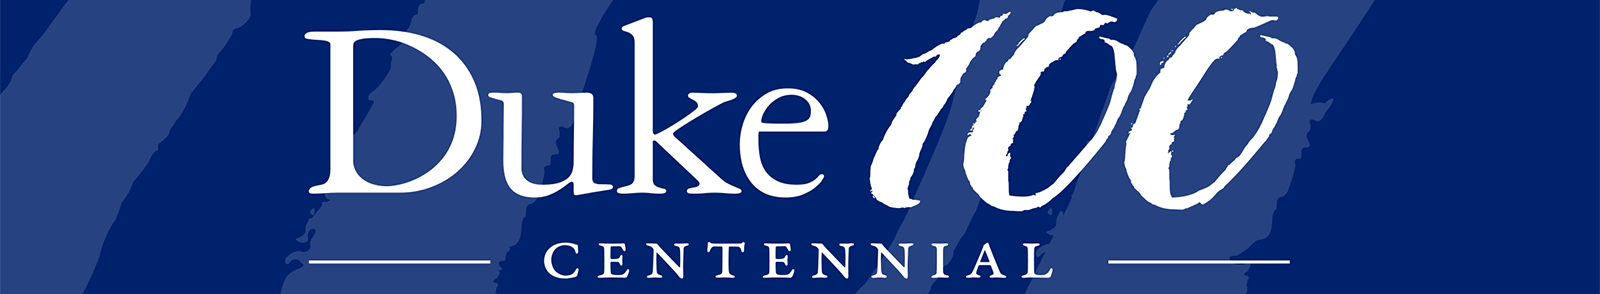 Duke 100 Centennial bar